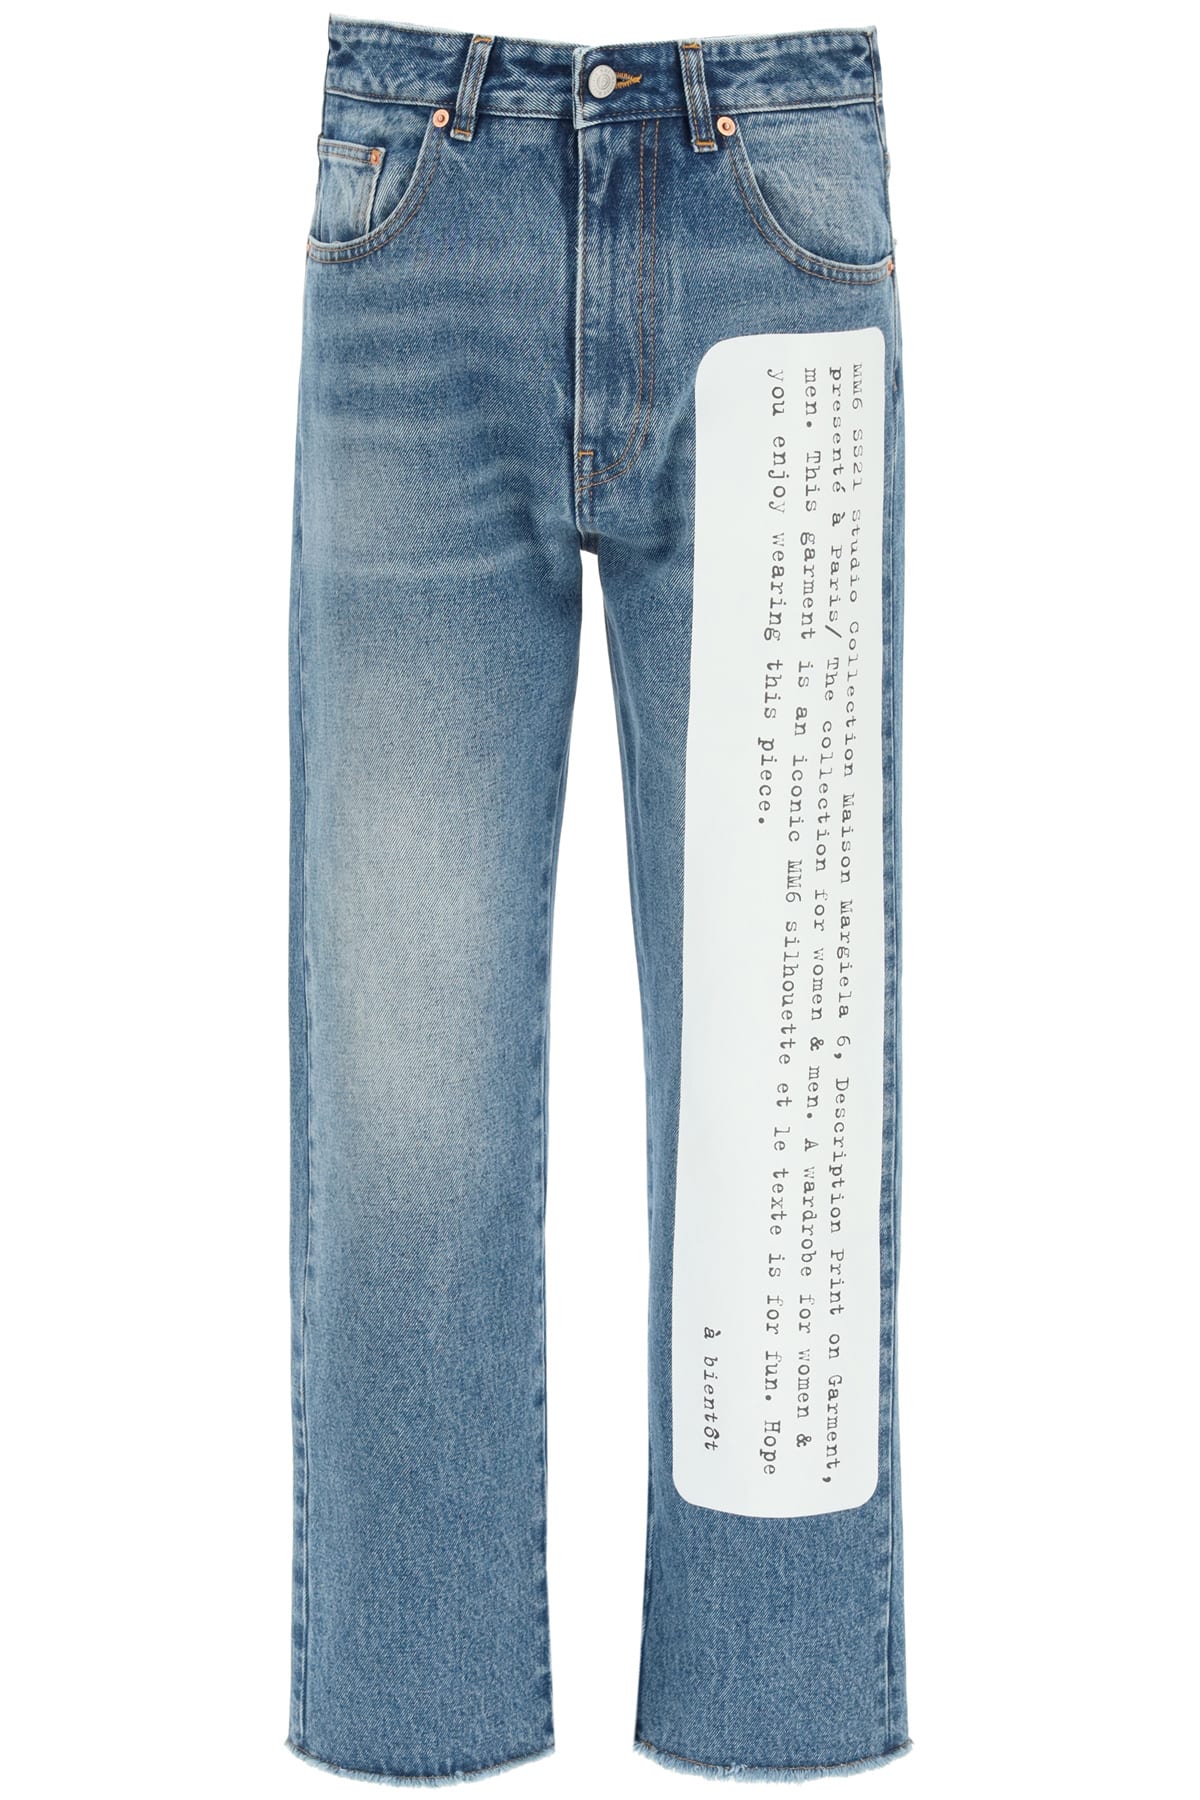 MM6 Maison Margiela Archive Print Denim Jeans